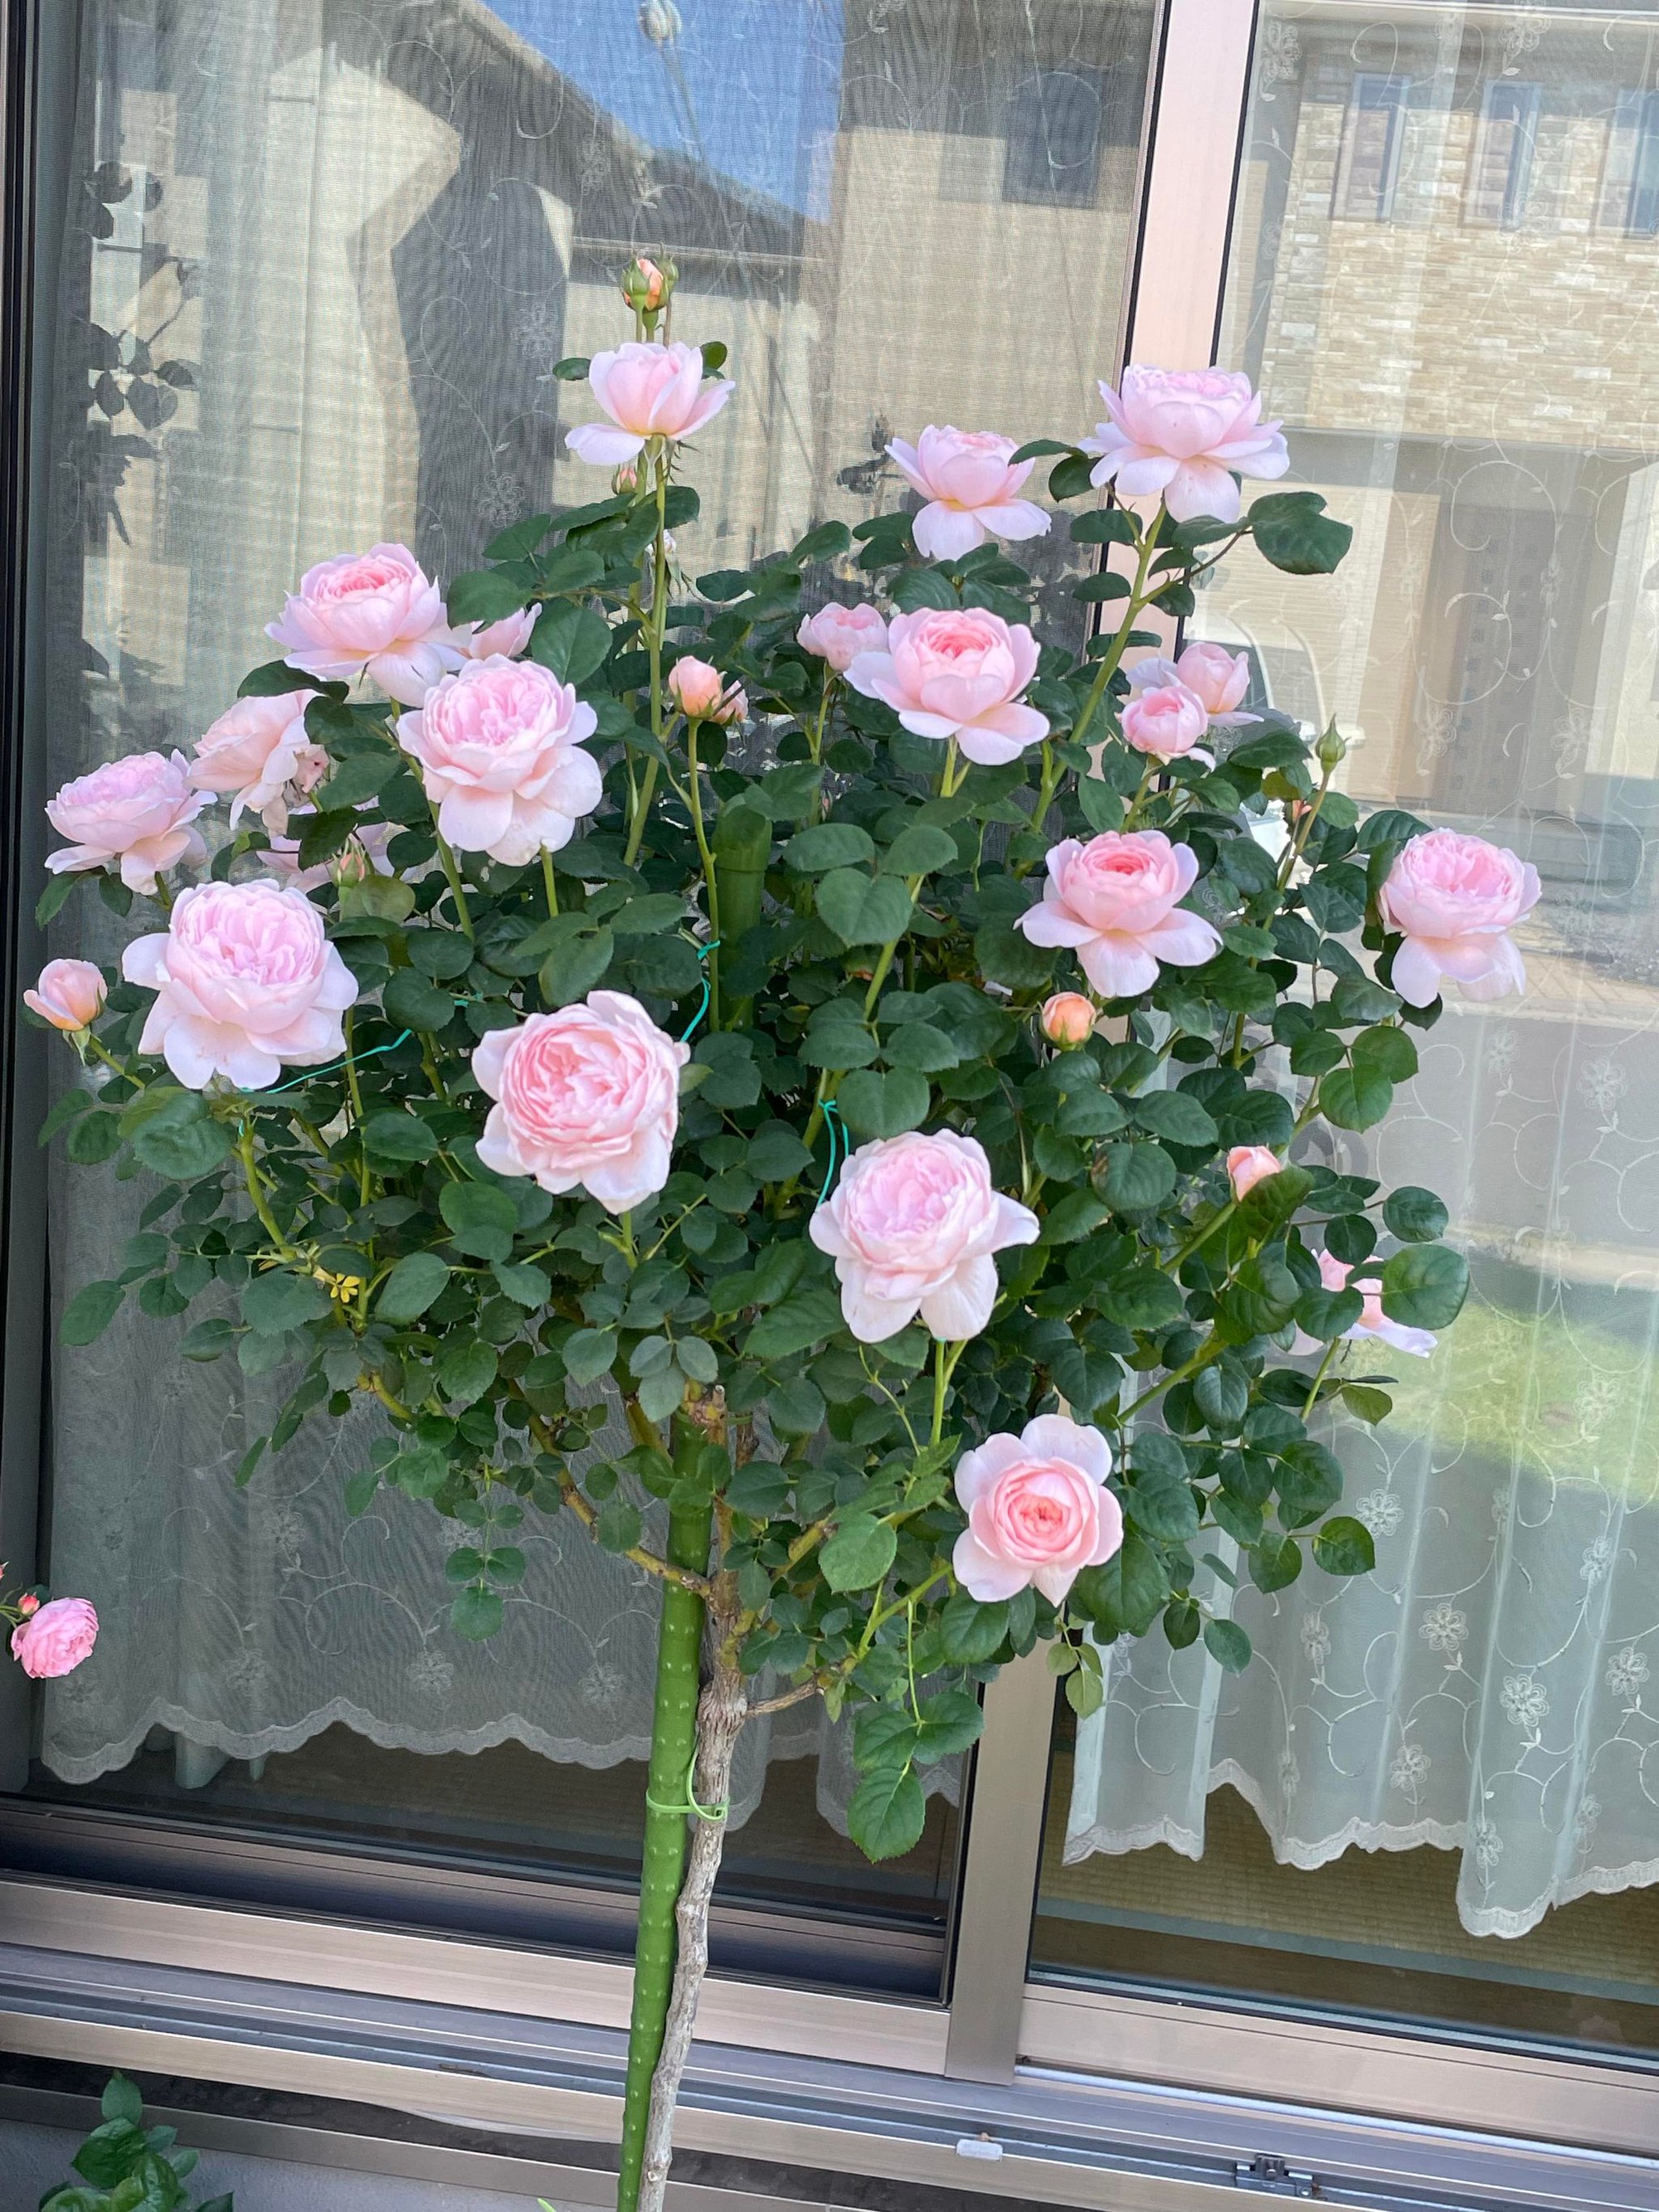 Ngôi nhà lúc nào cũng thơm nức mùi hoa vì có vườn hồng hơn 80 loại của mẹ Việt ở Nhật- Ảnh 13.